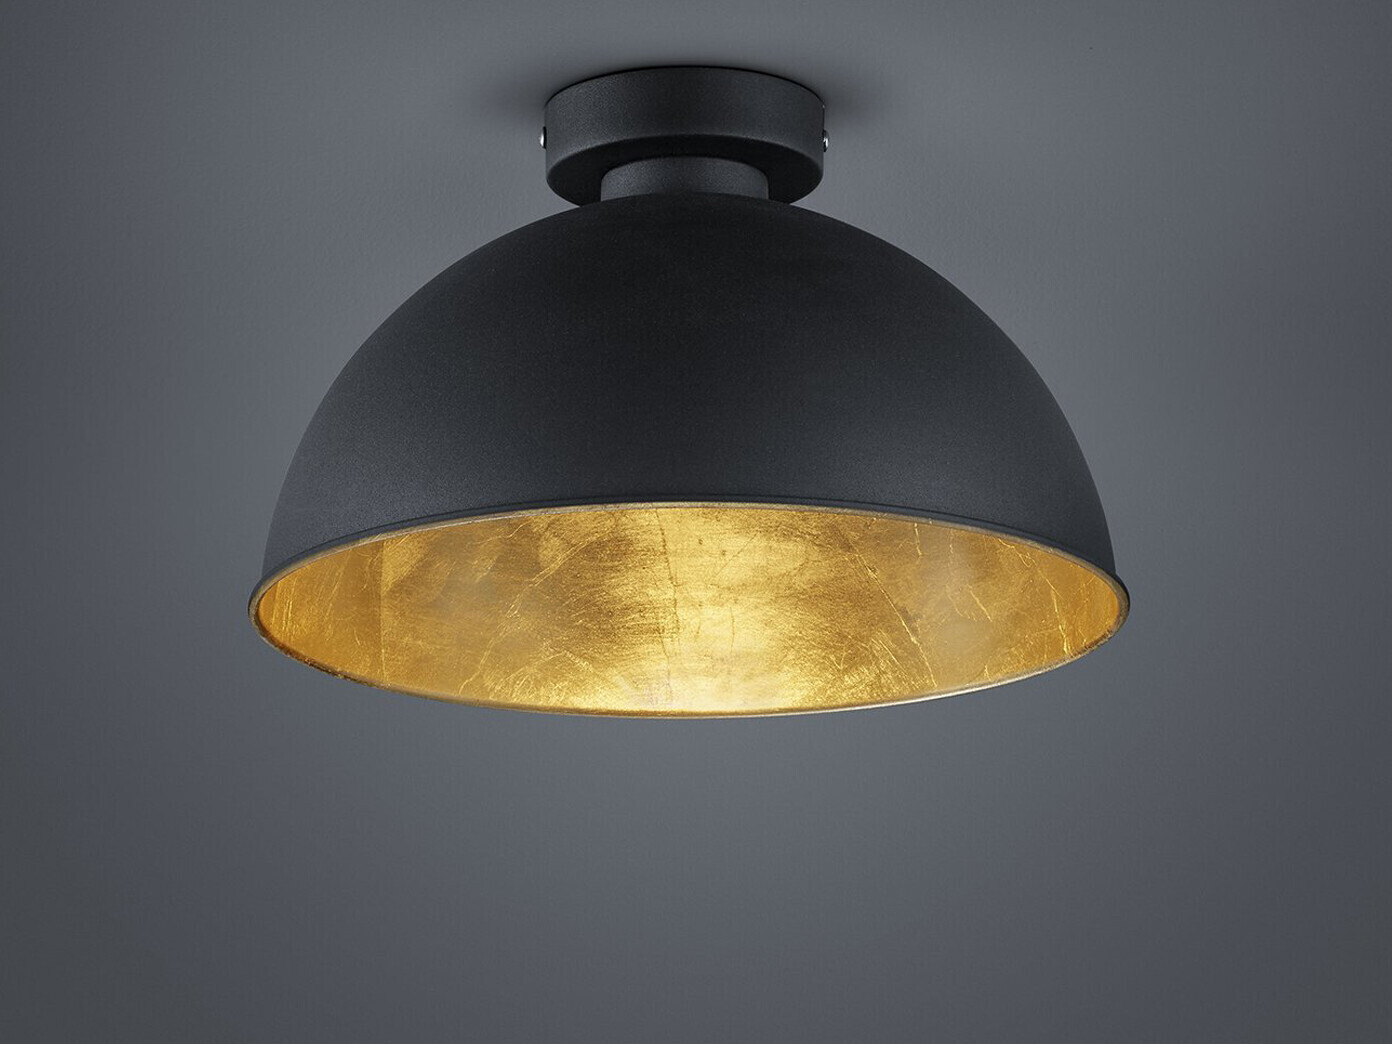 Trio Retro Deckenlampe Esszimmer 47,99 ab schwarz bei LED gold für in Design Deckenleuchte innen € | Preisvergleich